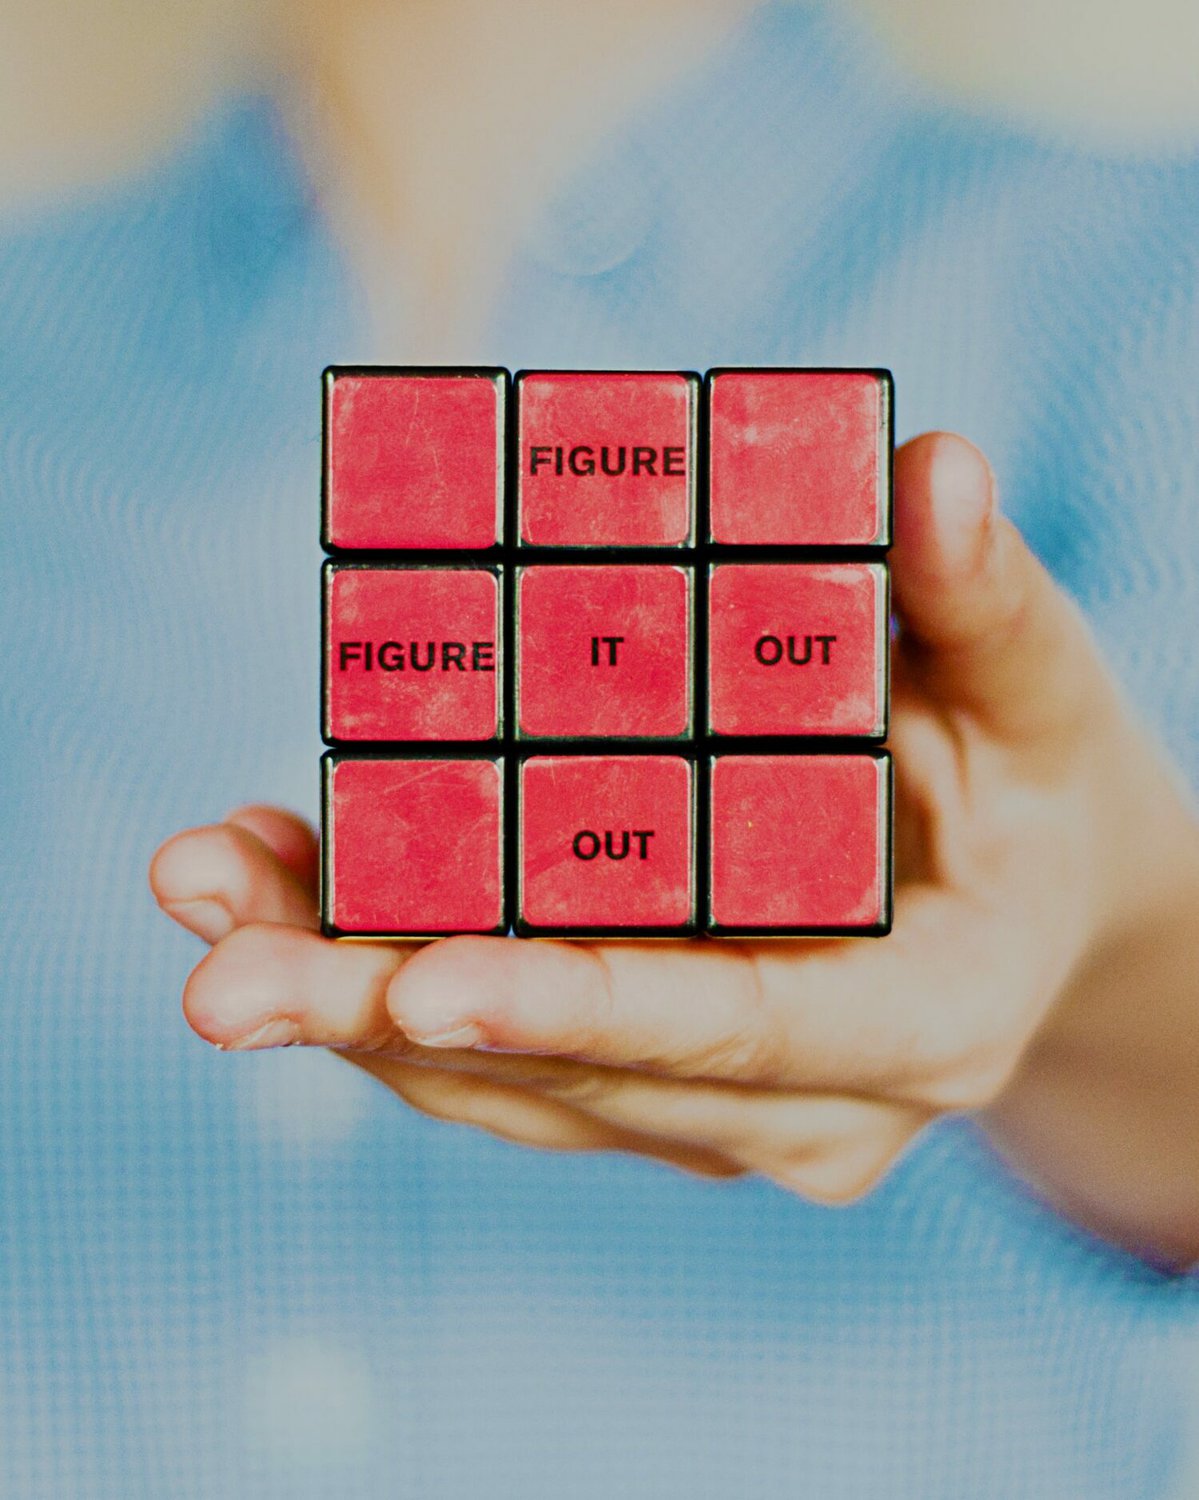 Vorderseite eines roten Rubikwürfels in einer Hand mit Aufdruck "figure it out"